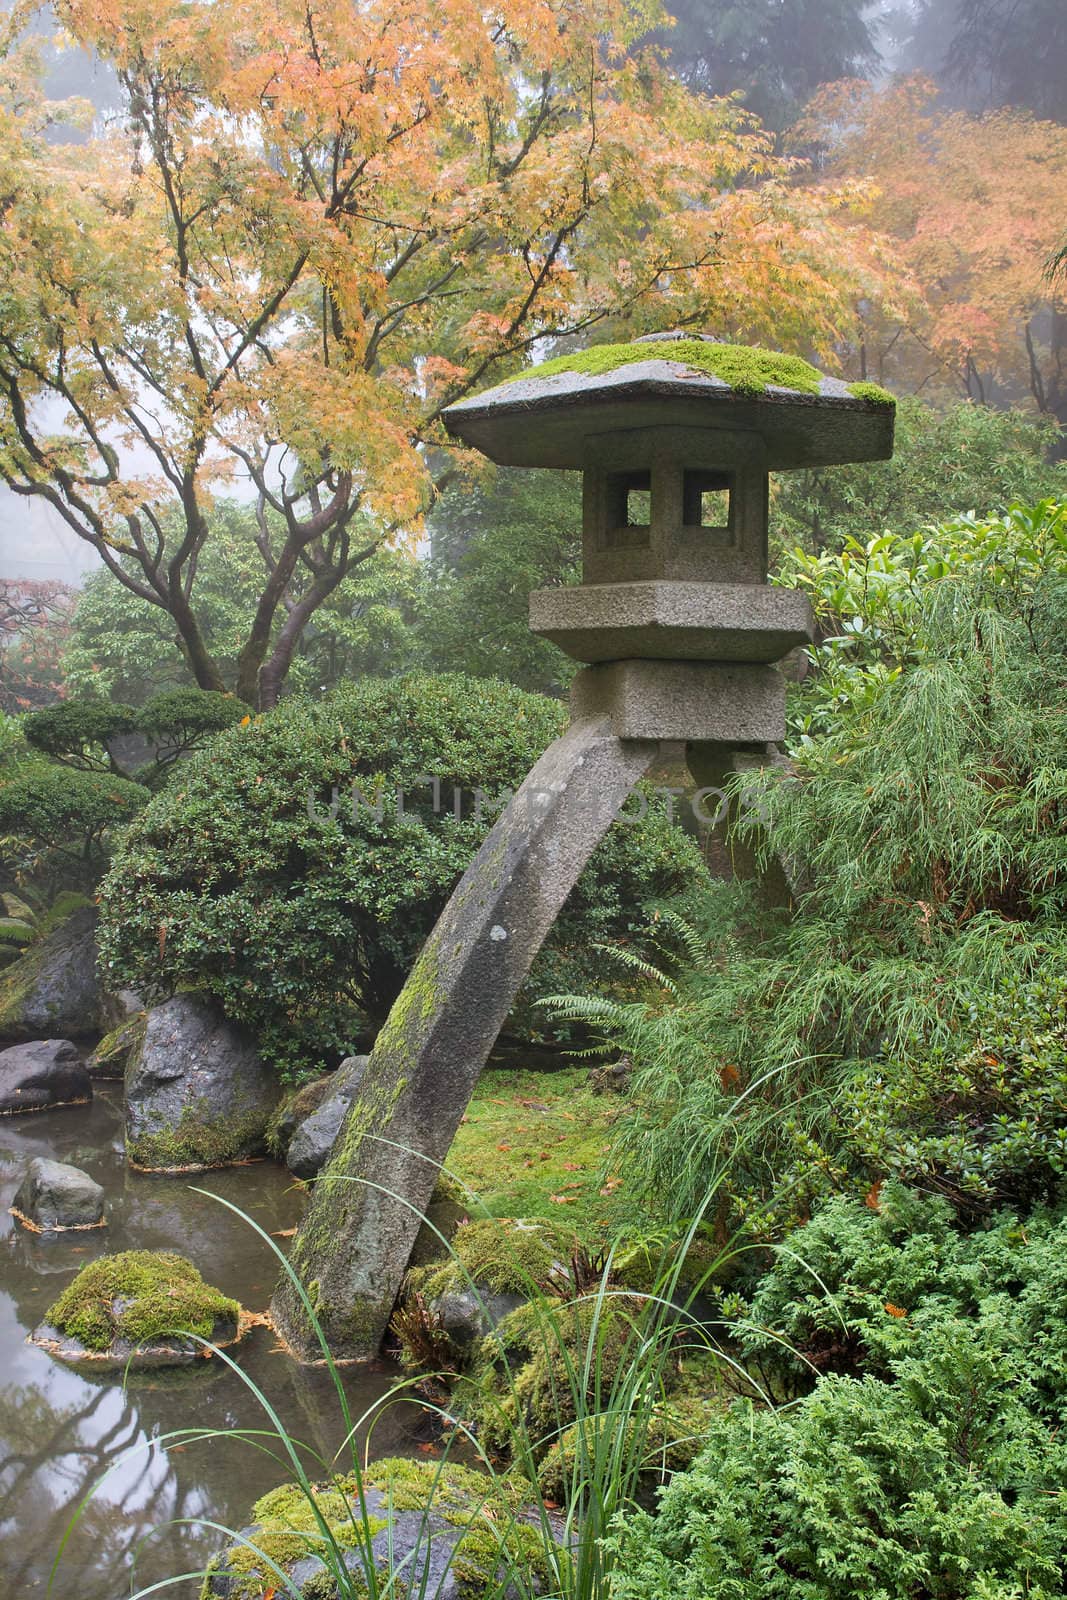 Stone Lantern in Japanese Garden by jpldesigns